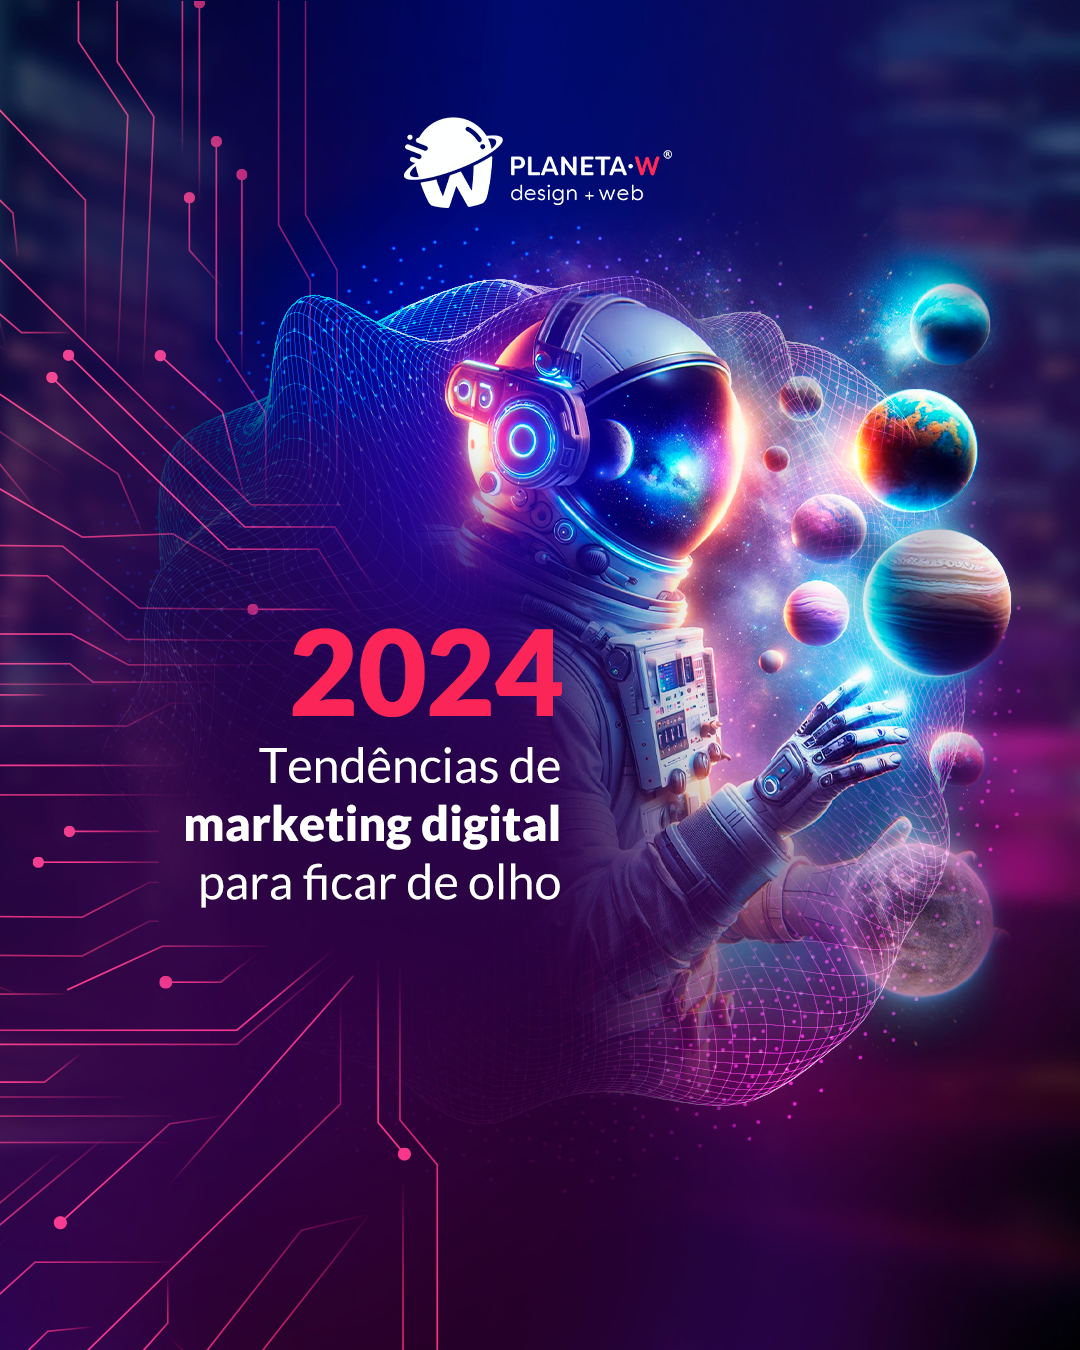 Tendências de marketing digital para ficar de olho em 2024